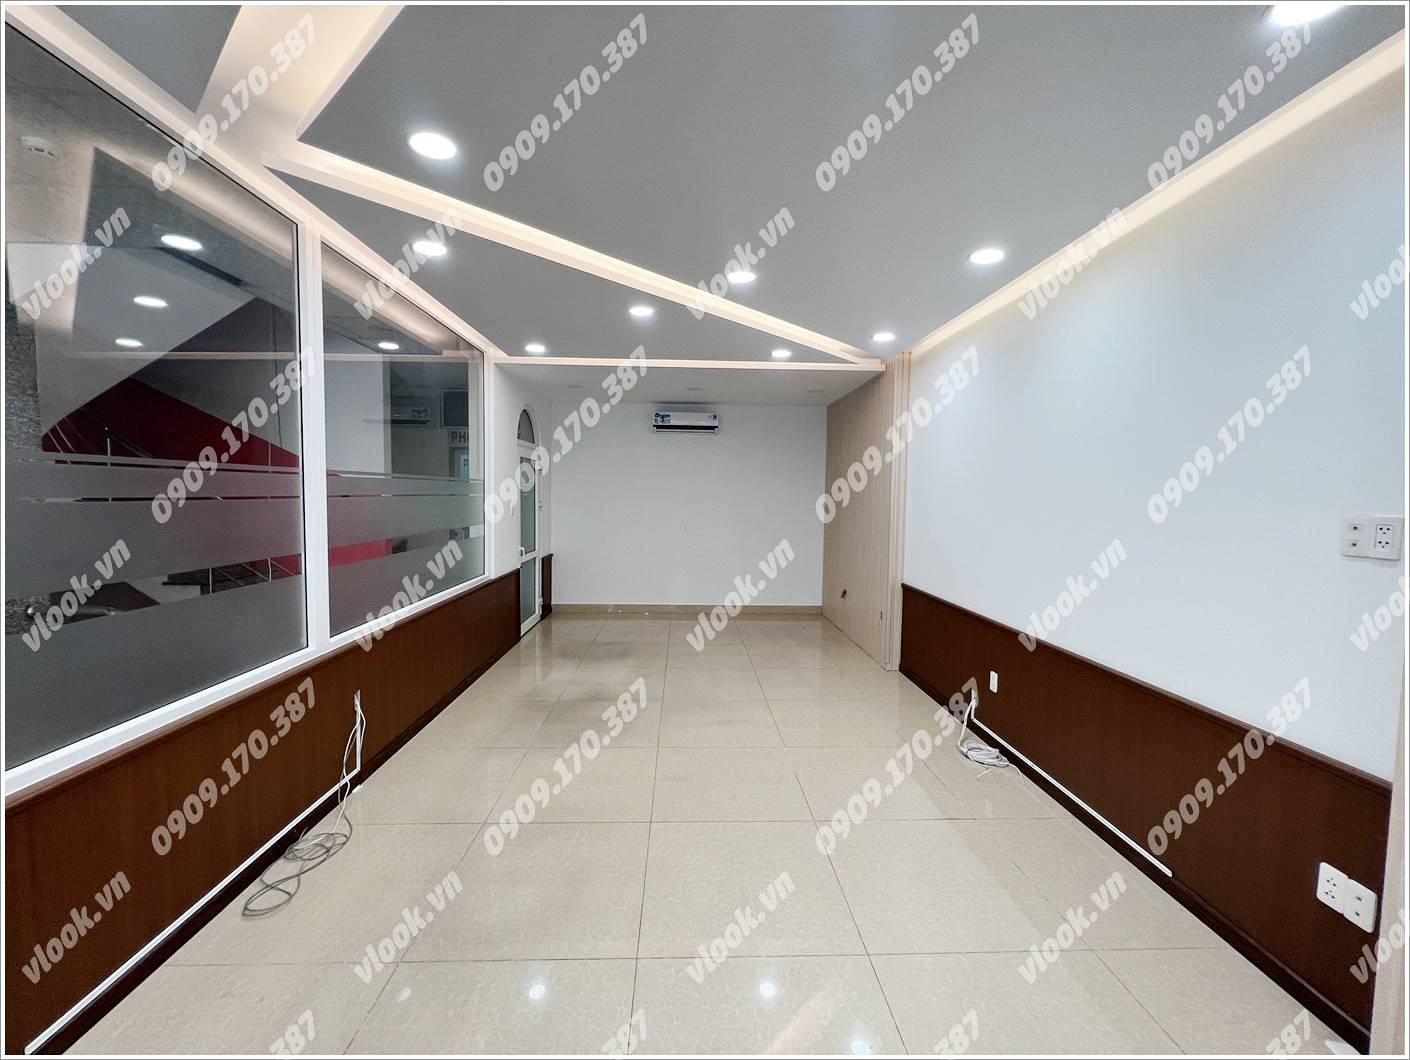 Cao ốc văn phòng cho thuê tòa nhà Diamond House Office Building, Trương Văn Bang, Quân 2, TP. Thủ Đức, TP.HCM - vlook.vn